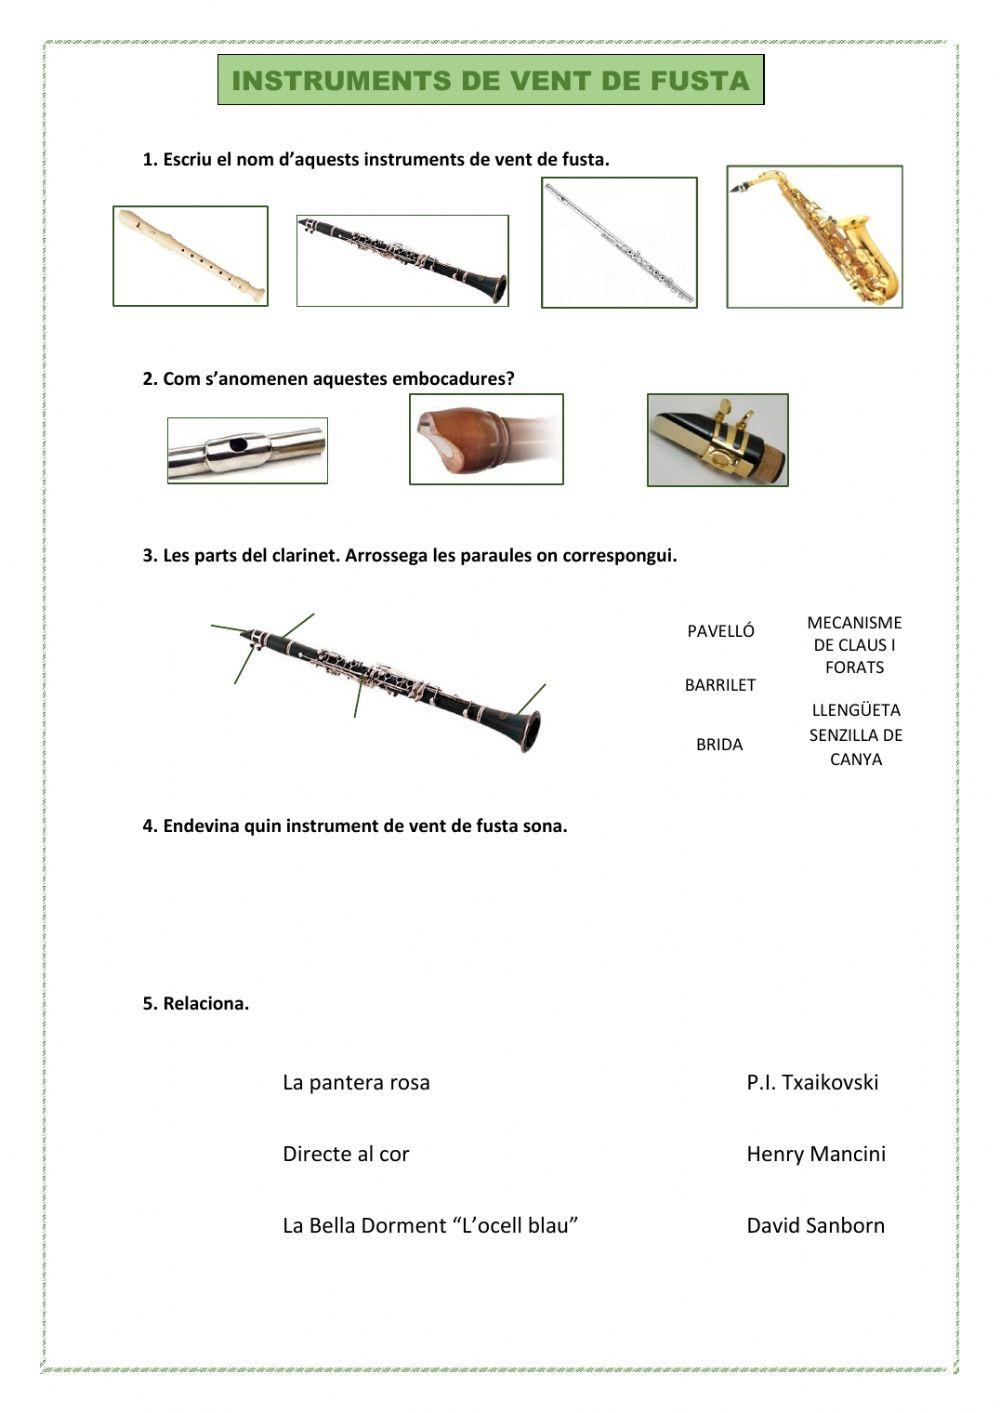 Els instruments de vent de fusta-El ritme de negra amb punt i corxera